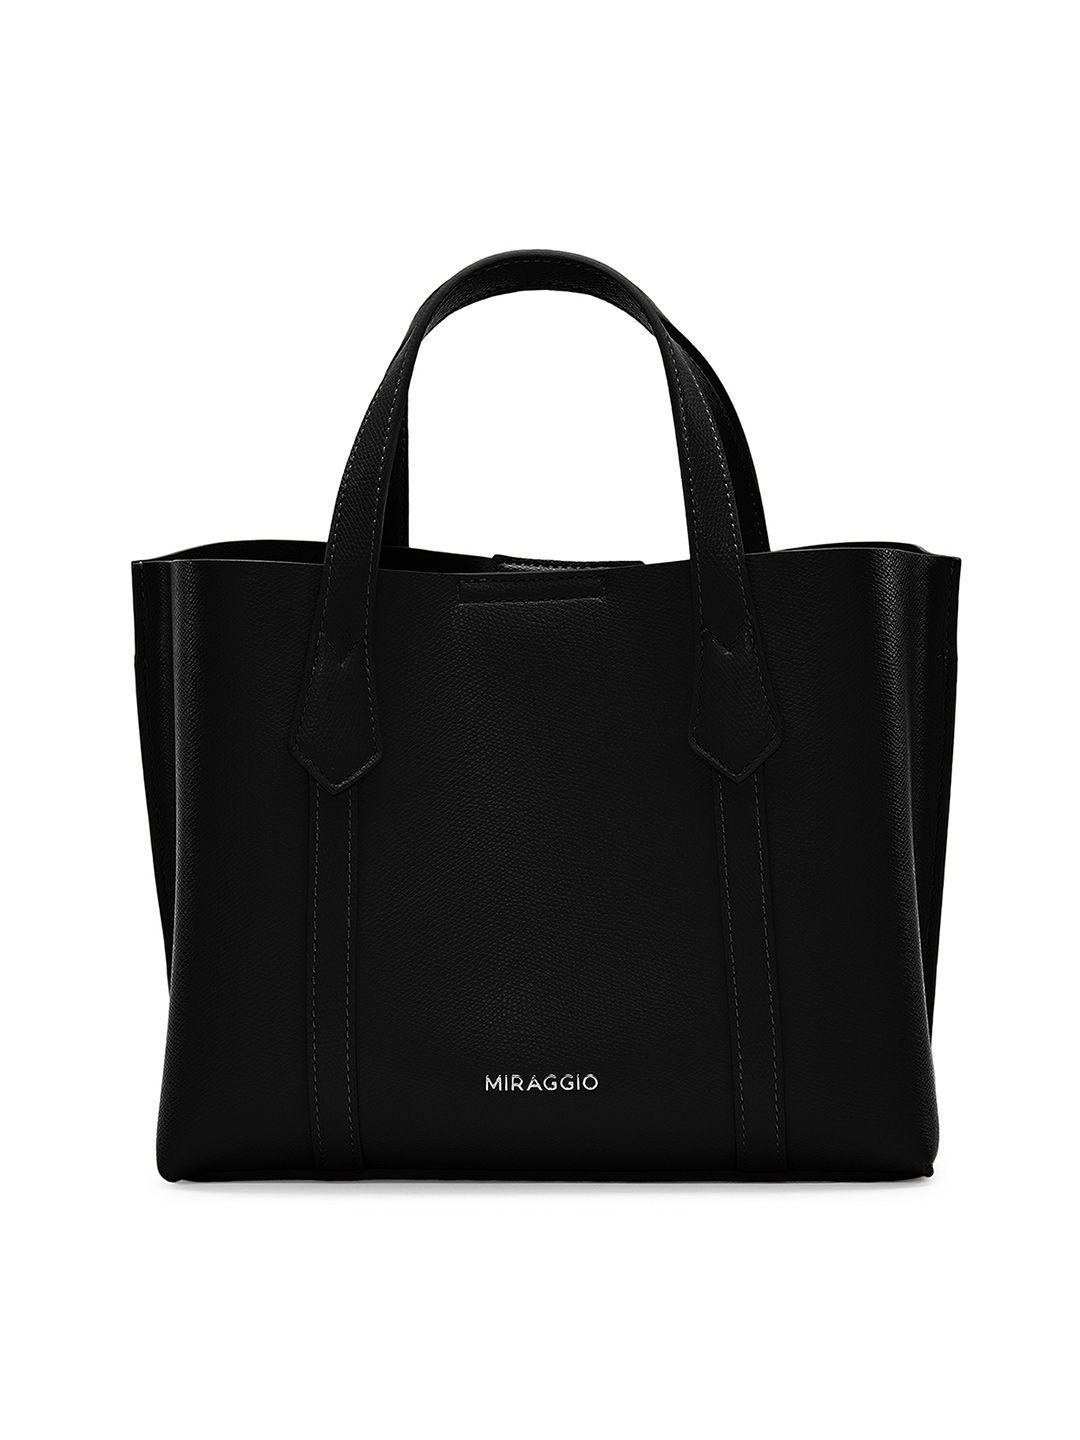 miraggio black solid mini tote bag with sling strap